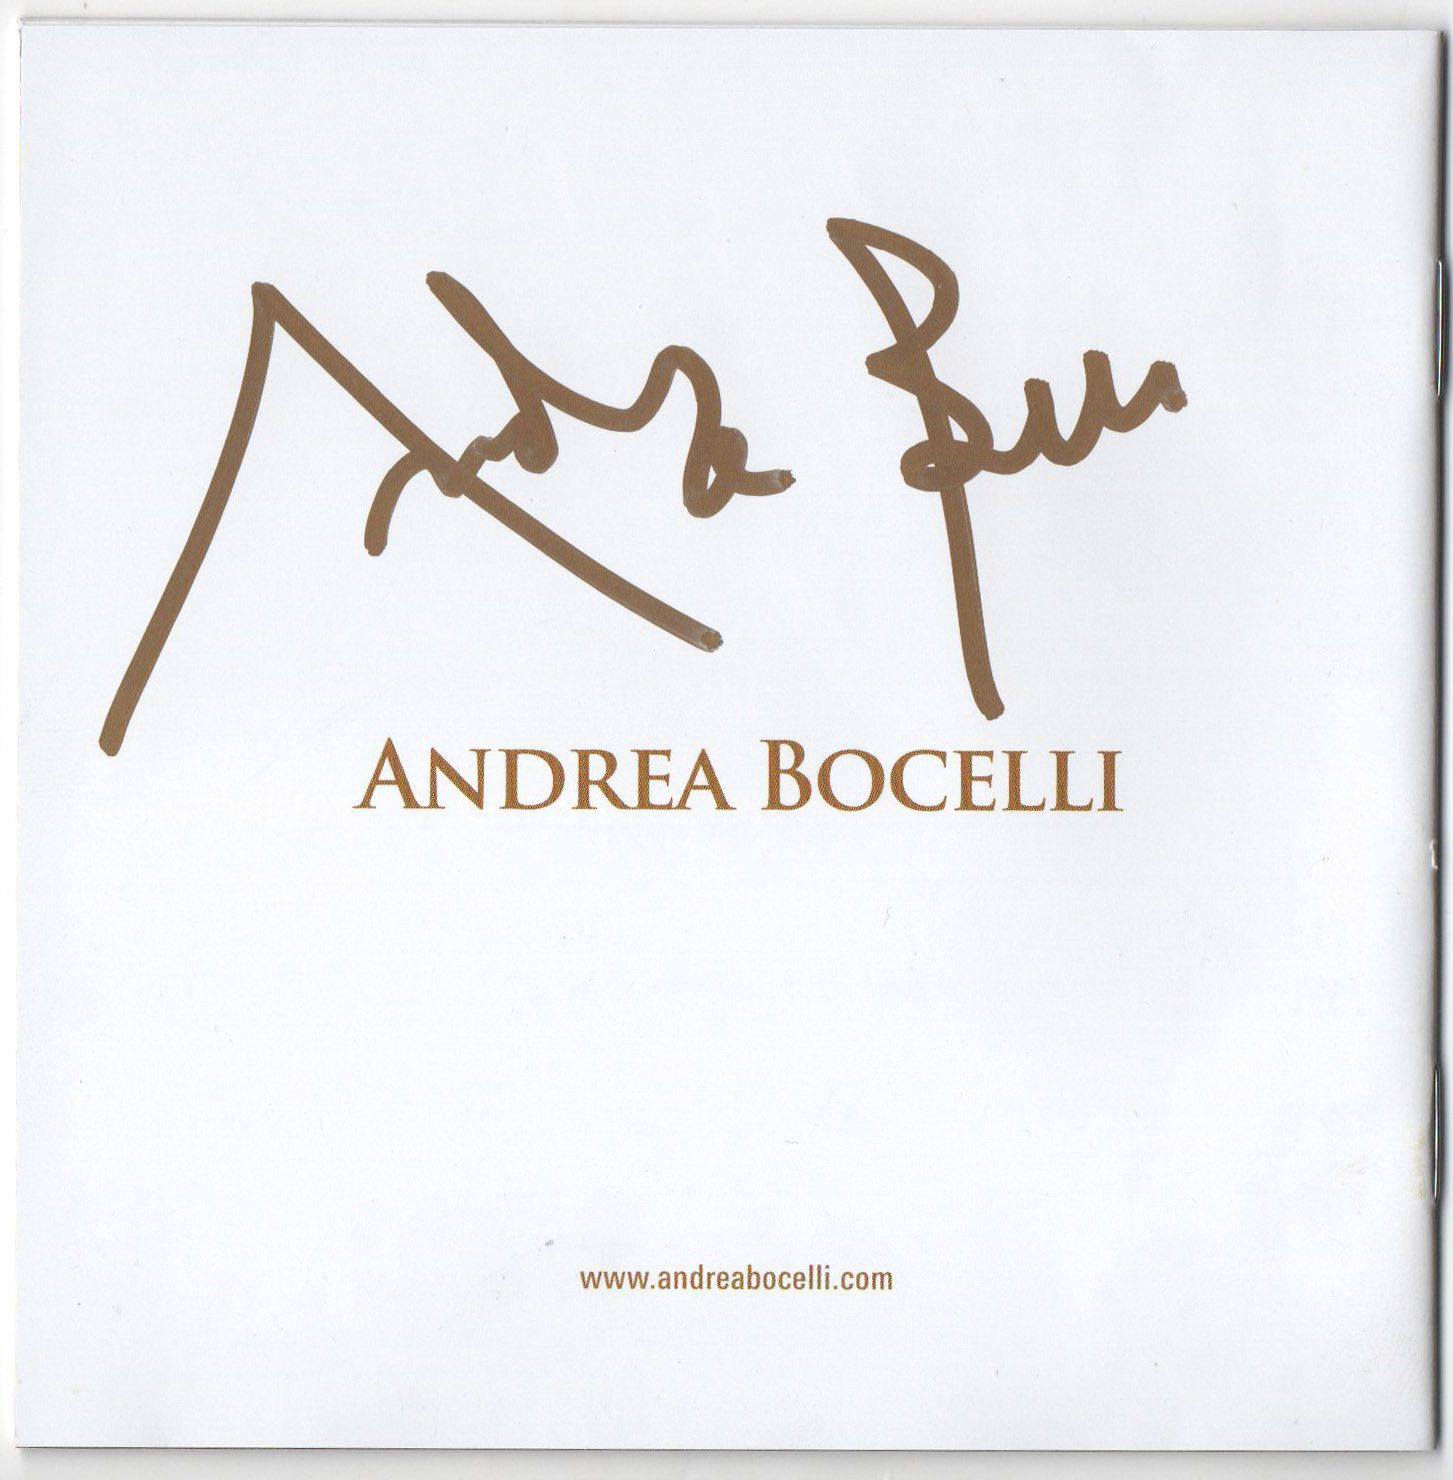 Enrica Cenzatti Preferred Rock to Classical Music & Then Andrea